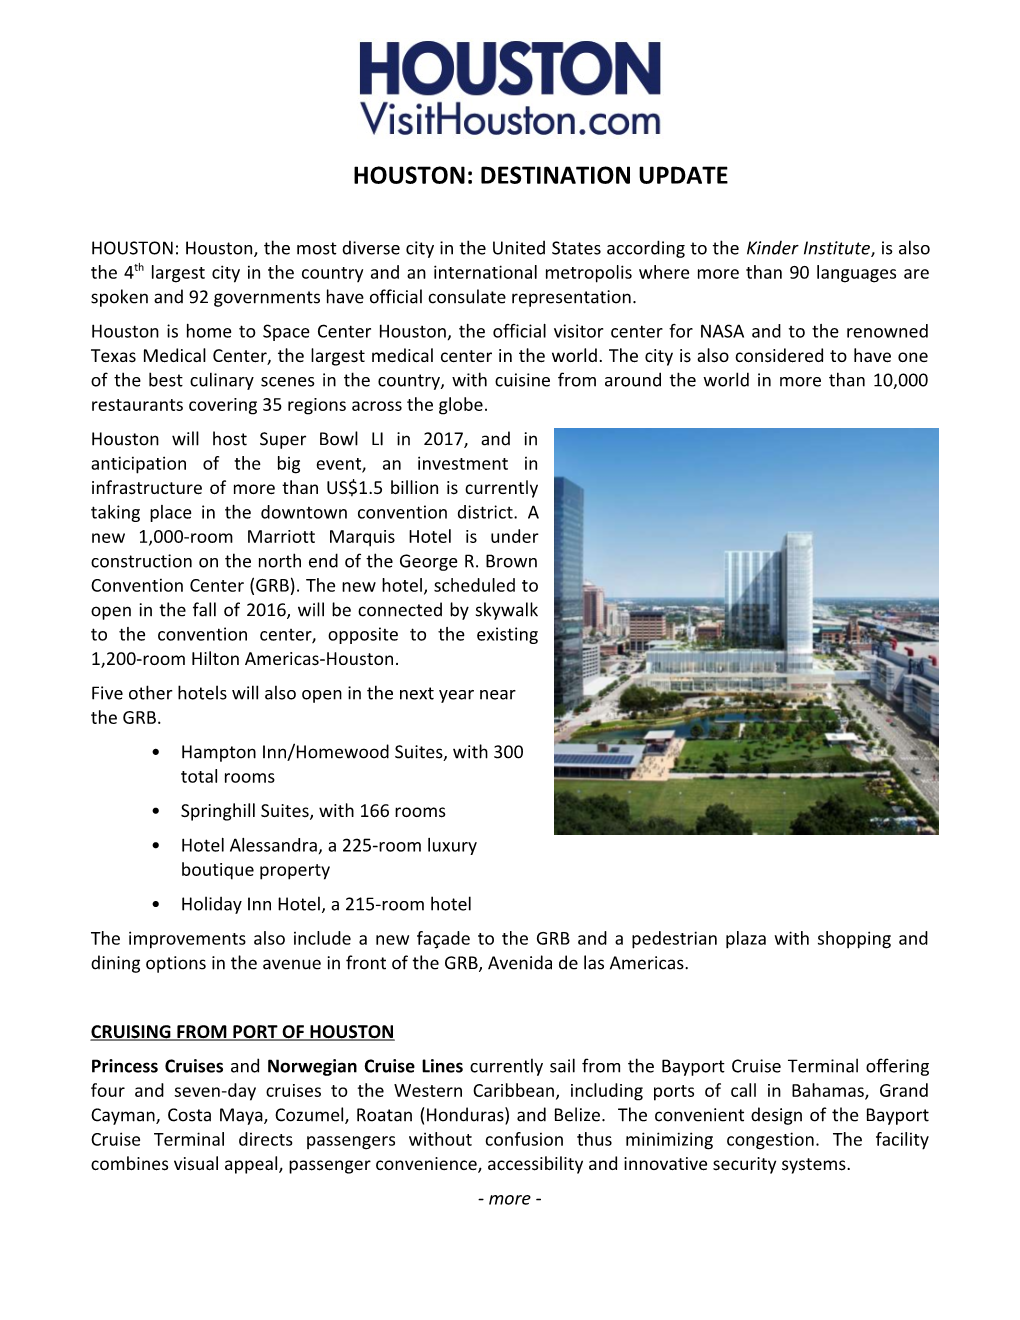 Houston: Destination Update